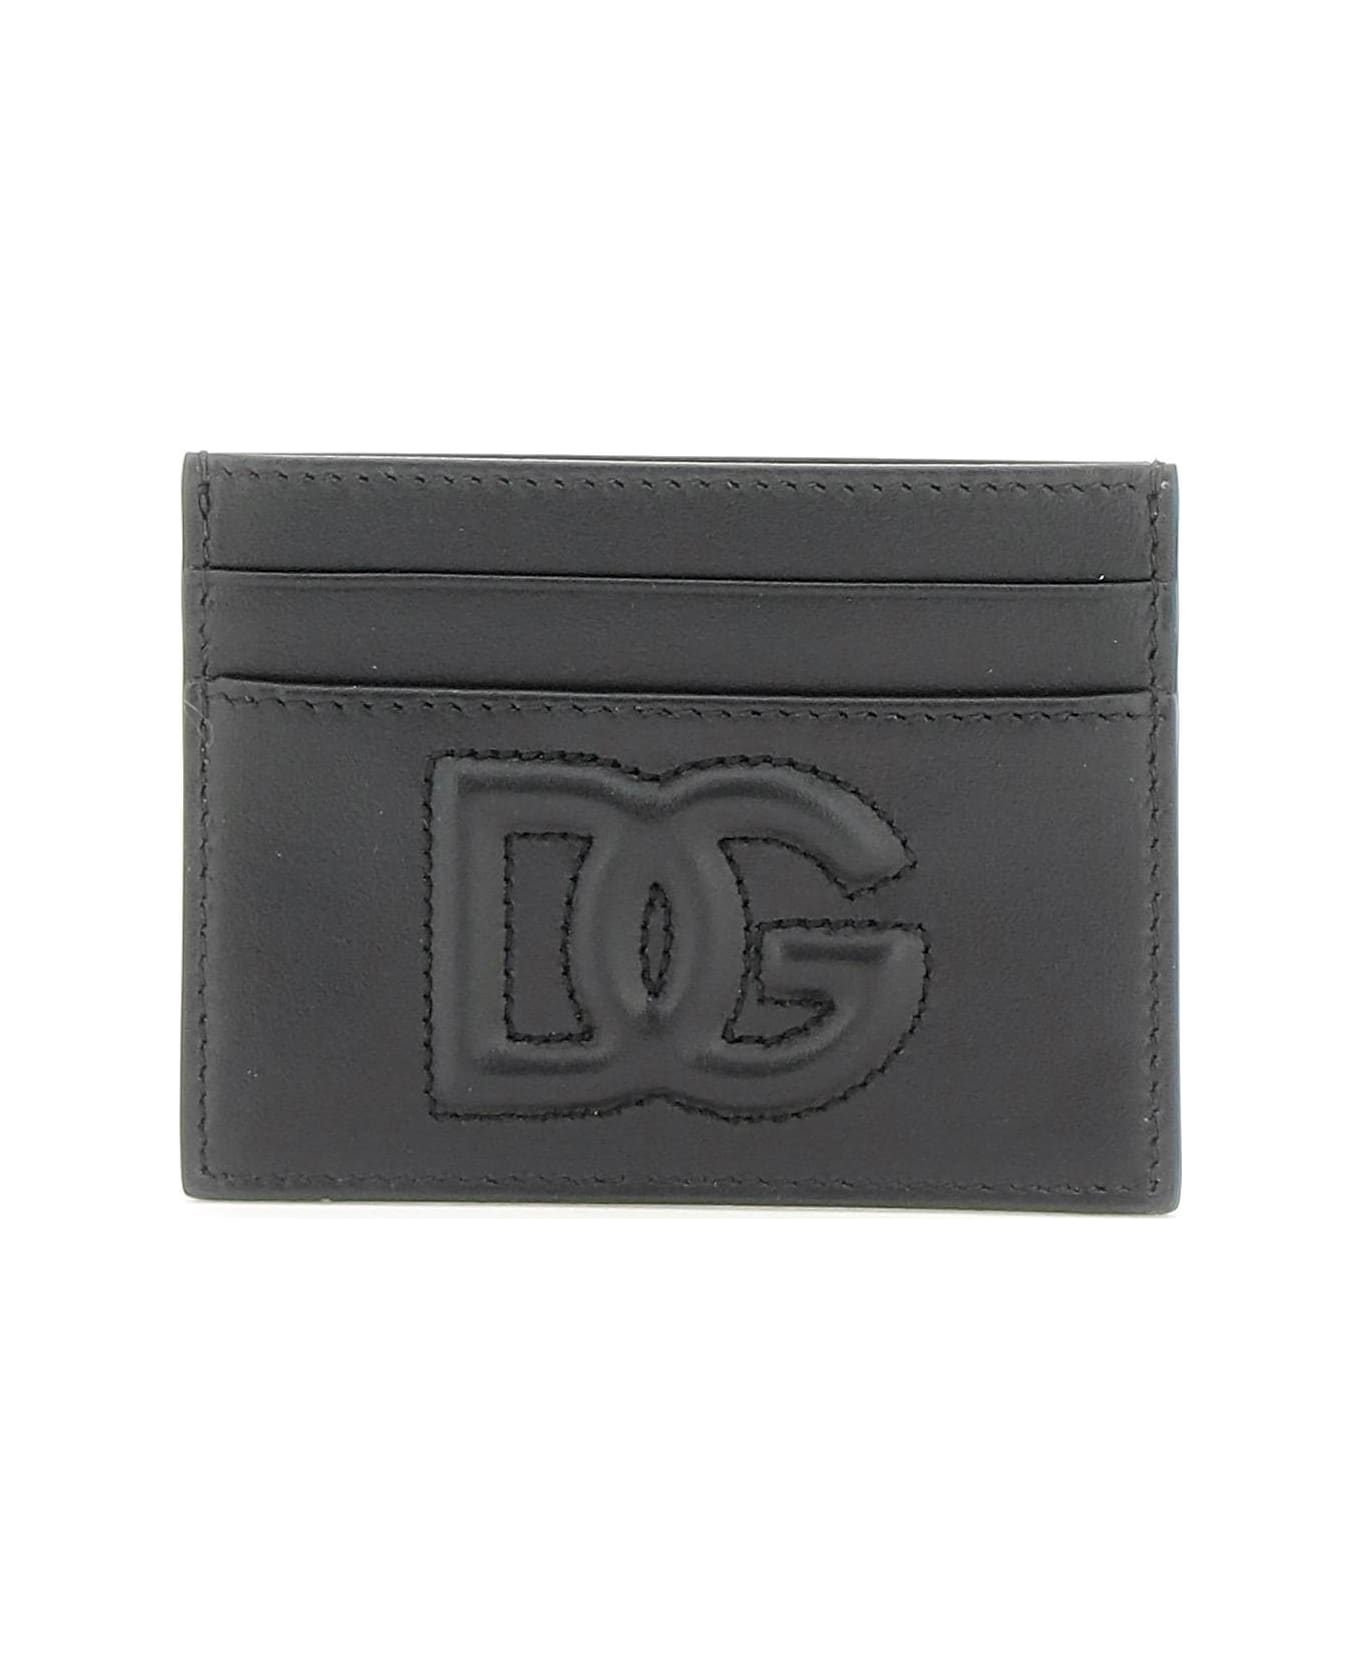 Dolce & Gabbana Classic Card Case - Nero